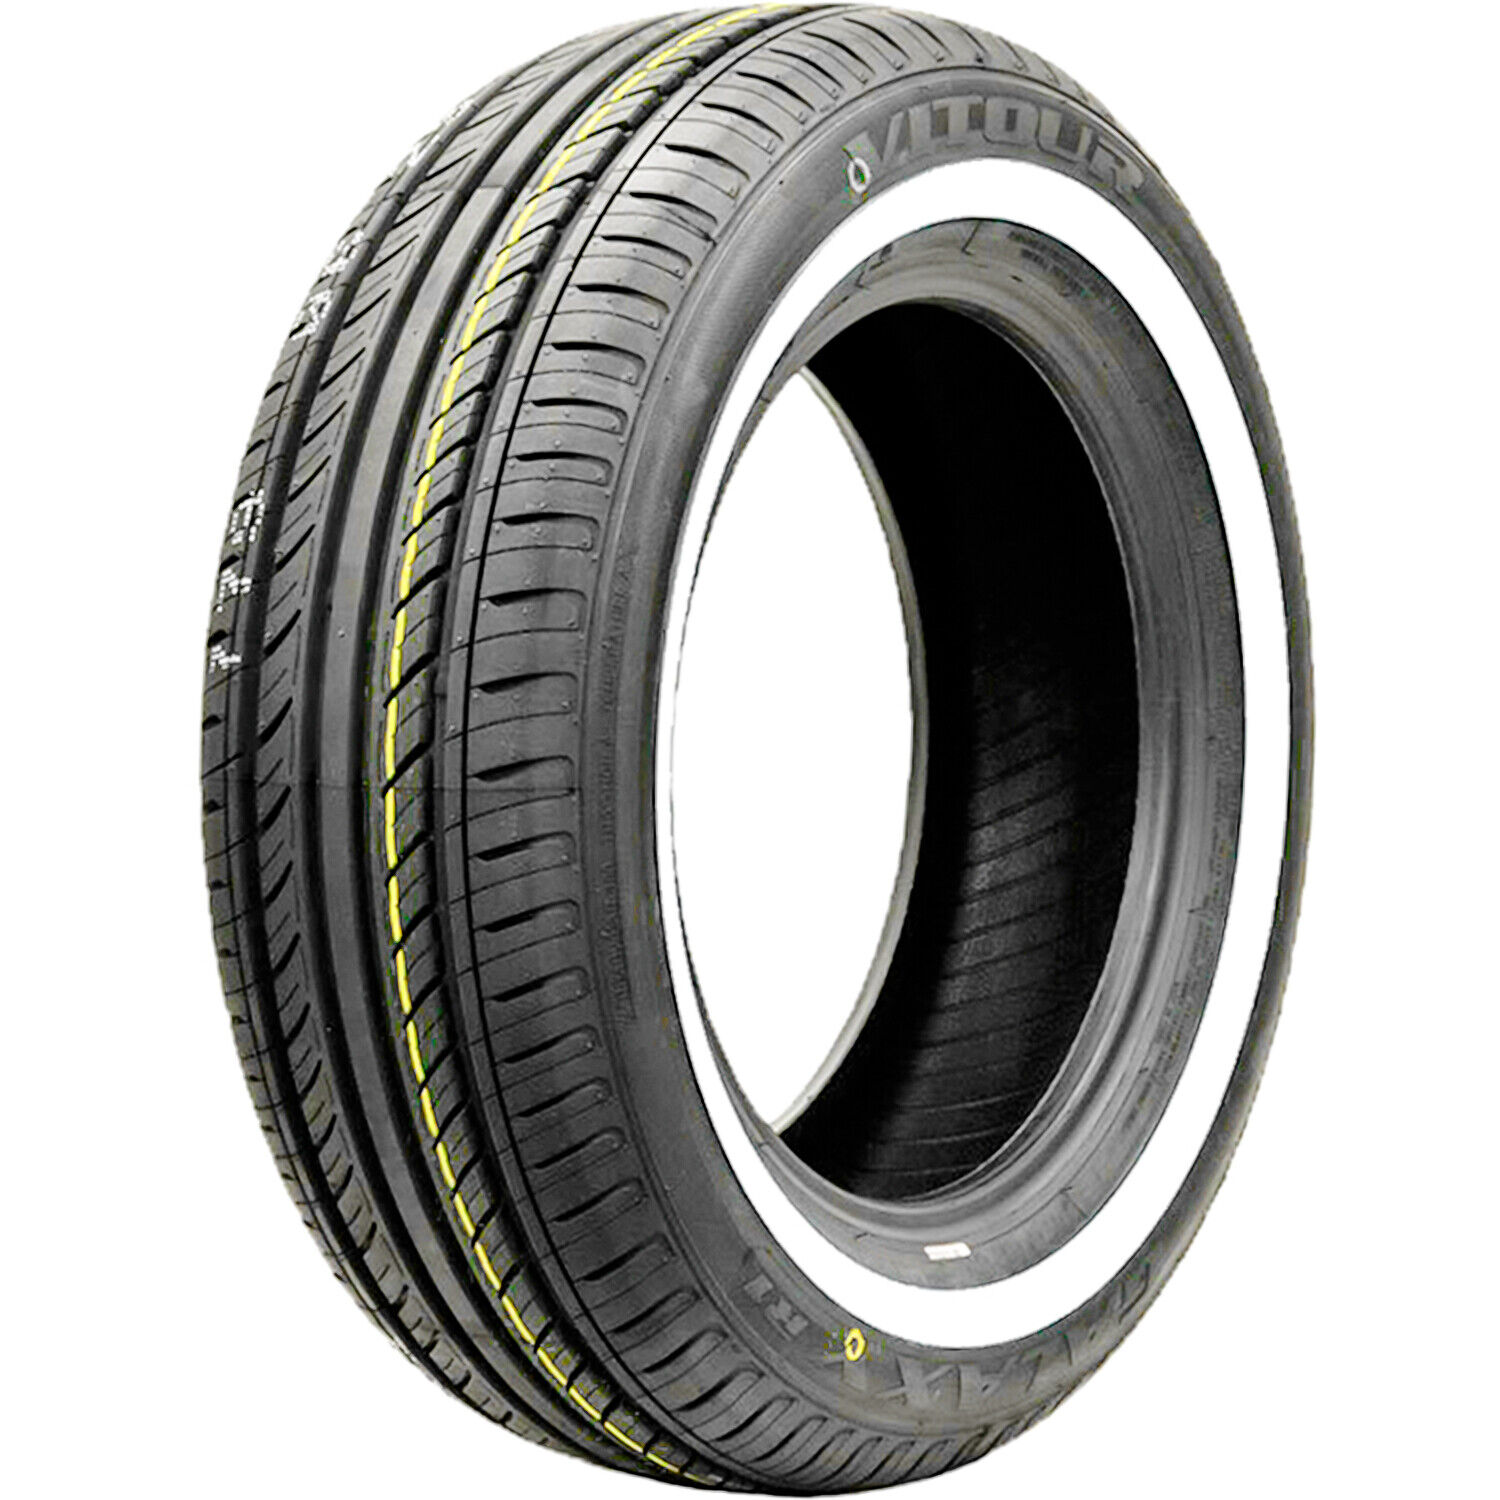 4 Tires Vitour Galaxy R1 155R15 82H AS A/S Performance